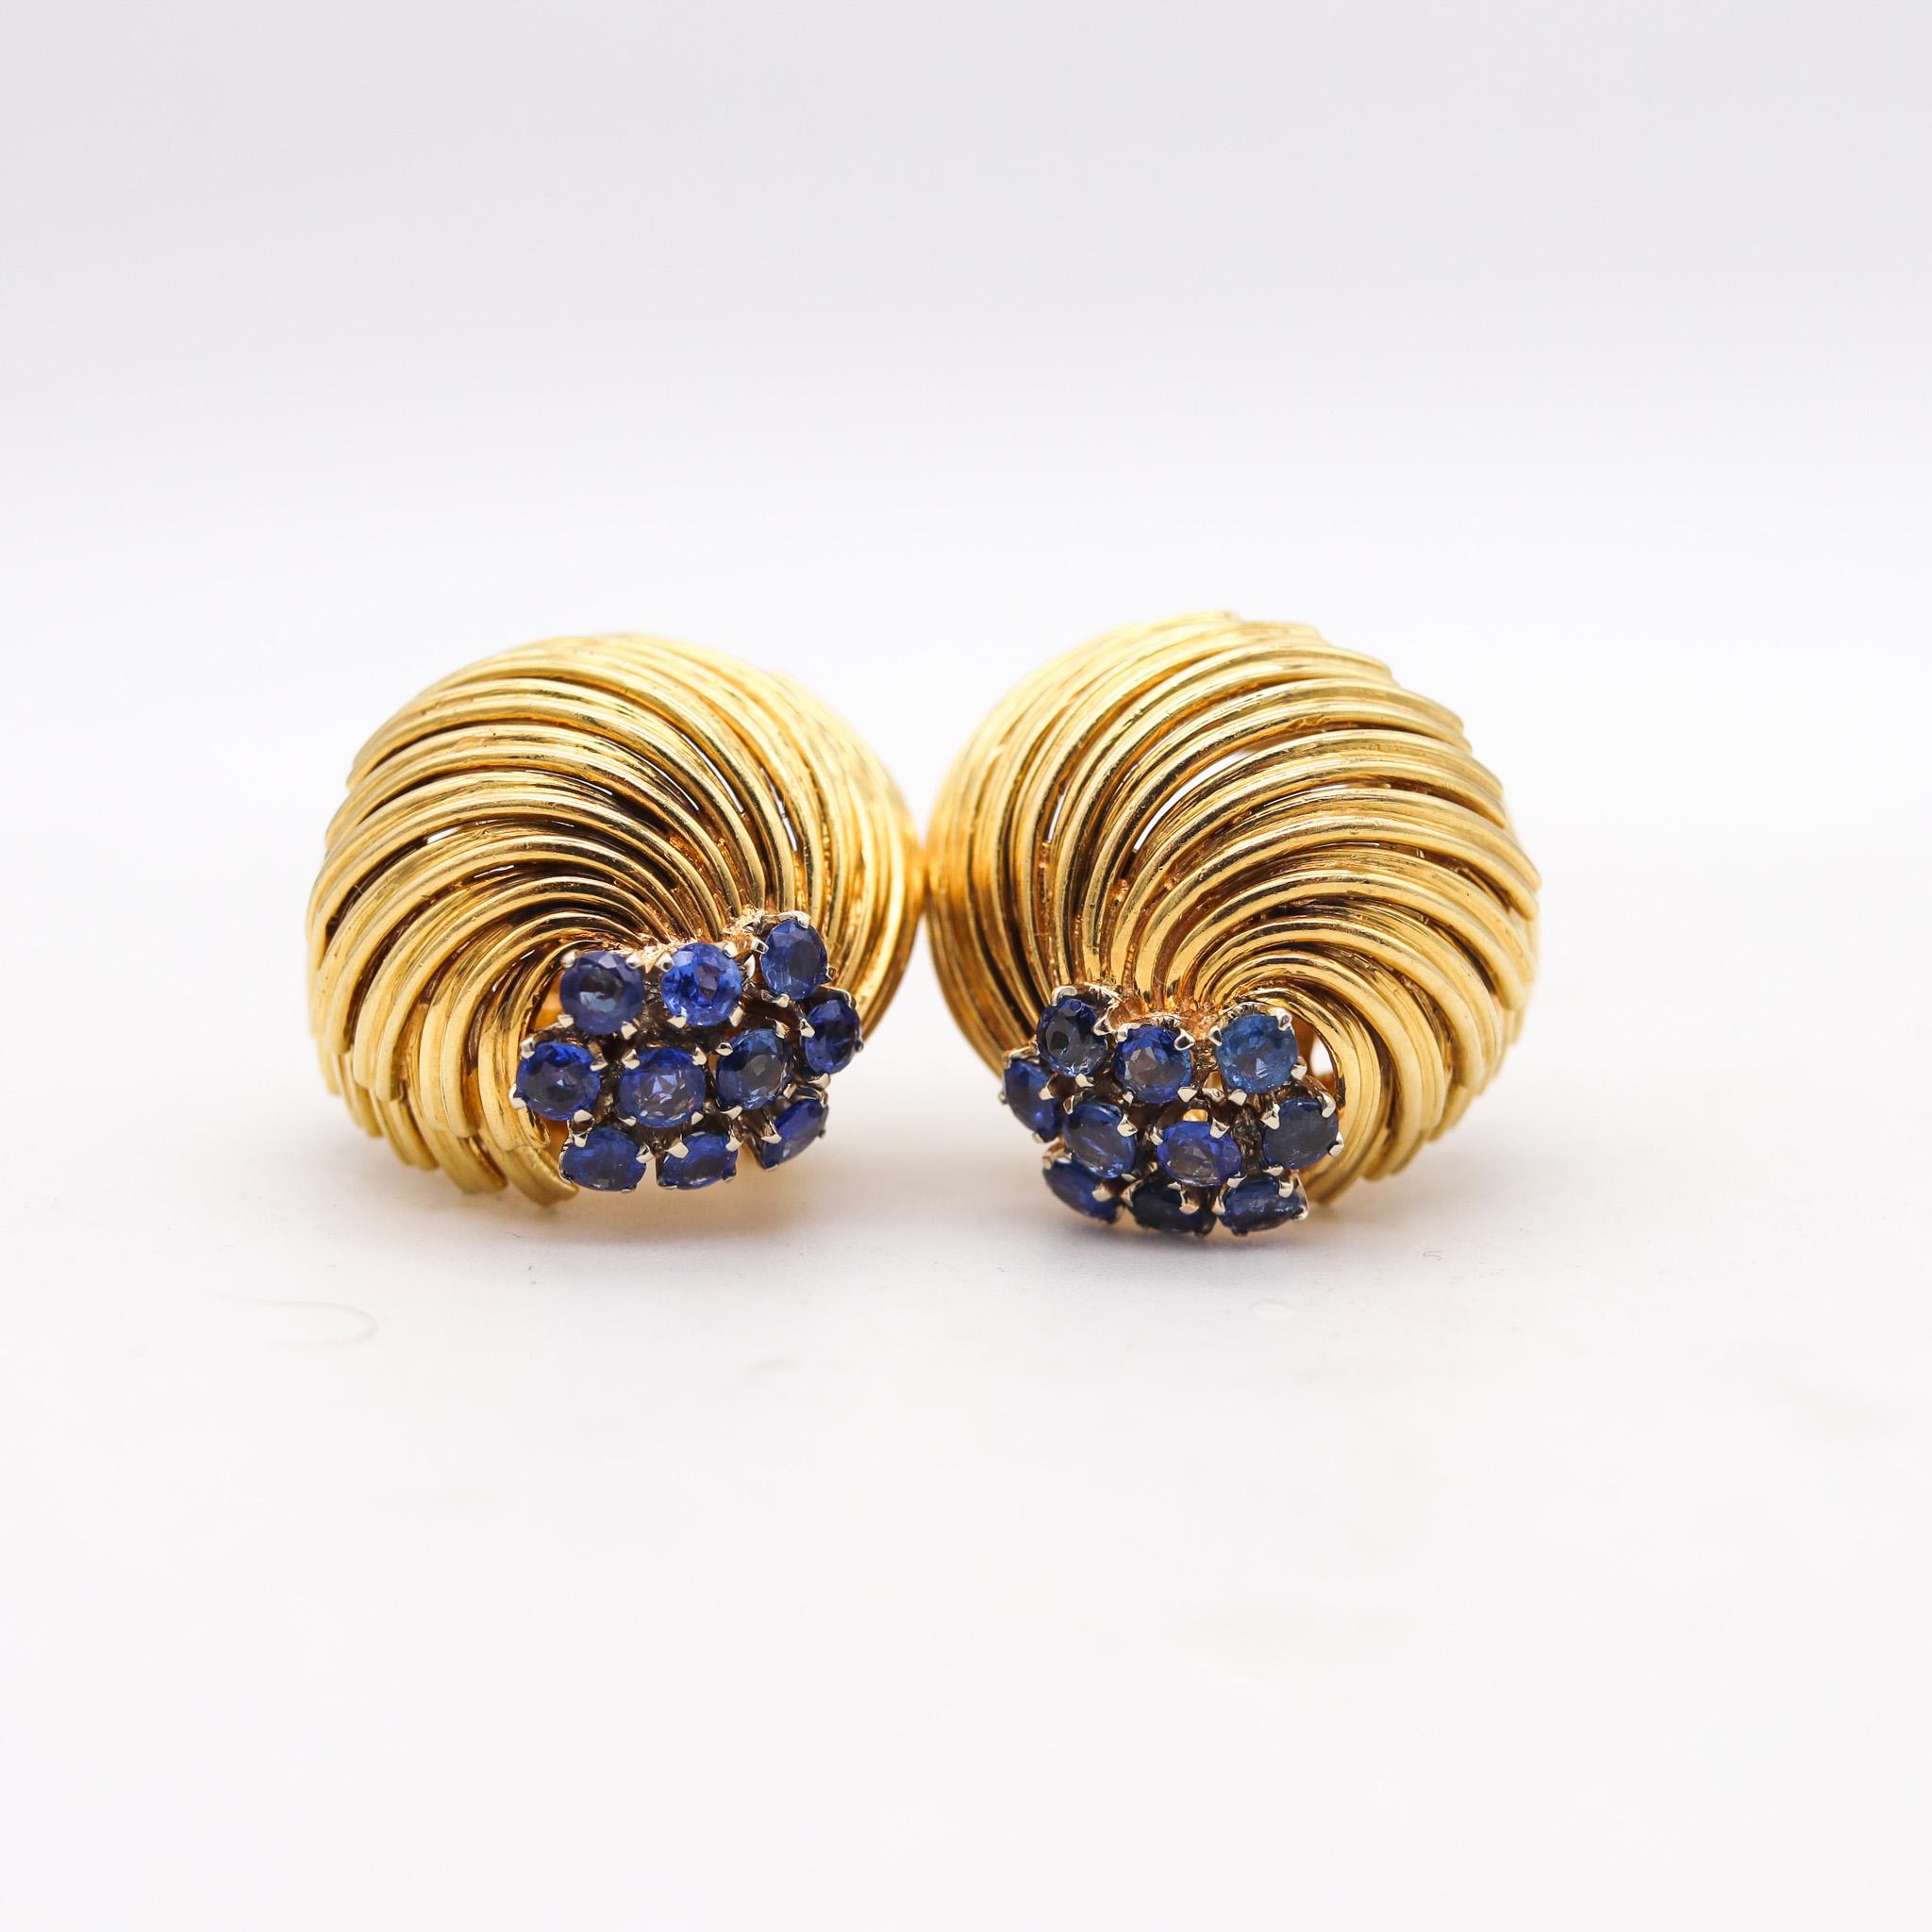 Ohrclips entworfen von David Balogh.

Hervorragendes Paar Clip-Ohrringe von David Balogh aus den 1960er Jahren. Dieses modernistische Paar wurde in einer Bombenform aus massivem 18-karätigem Gelbgold mit polierter Oberfläche gefertigt. Ausgestattet